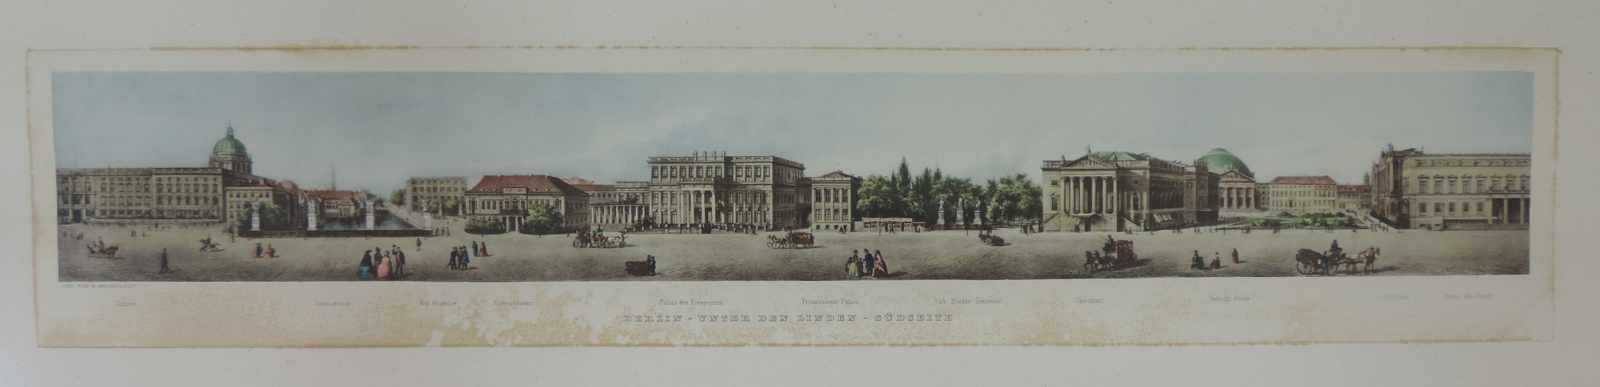 Robert MEINHARDT (XIX). 2 Ansichten von Berlin. 91 cm x 18 cm. 2 Drucke. Stockfleckig. Unter den - Image 3 of 6